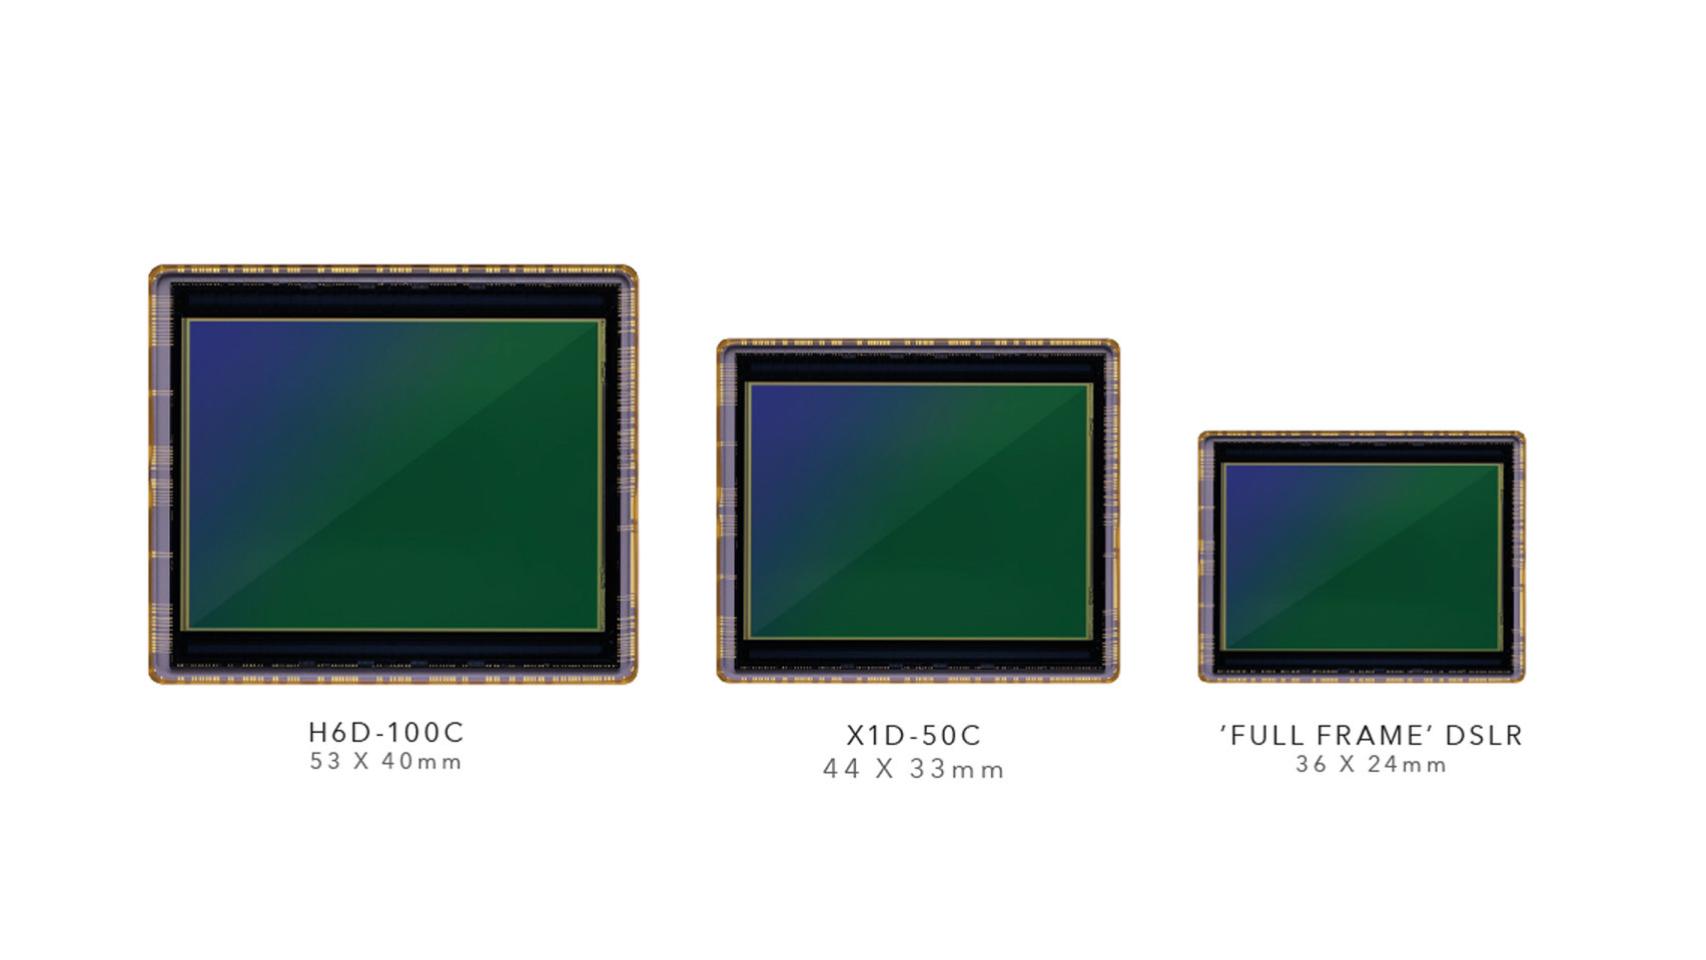 Comparativa entre sensores de formato medio y Full Frame.